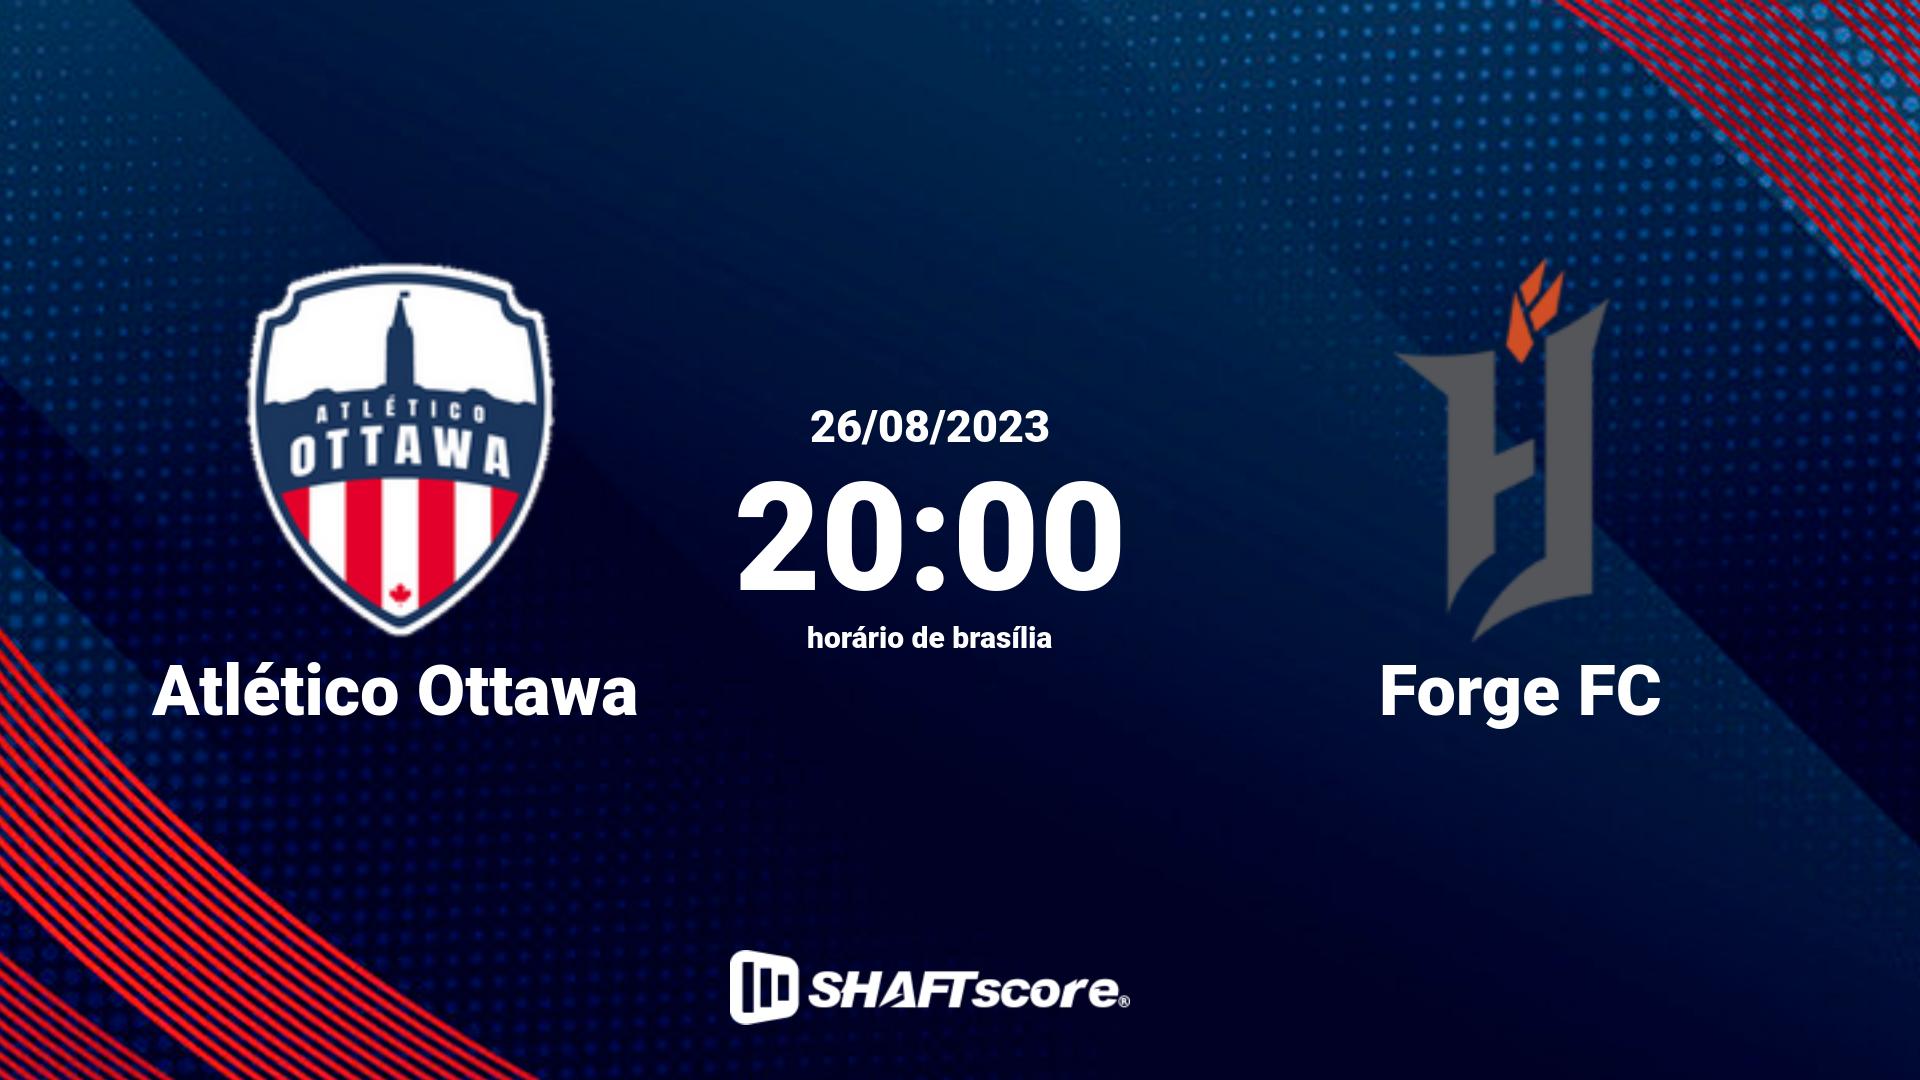 Estatísticas do jogo Atlético Ottawa vs Forge FC 26.08 20:00